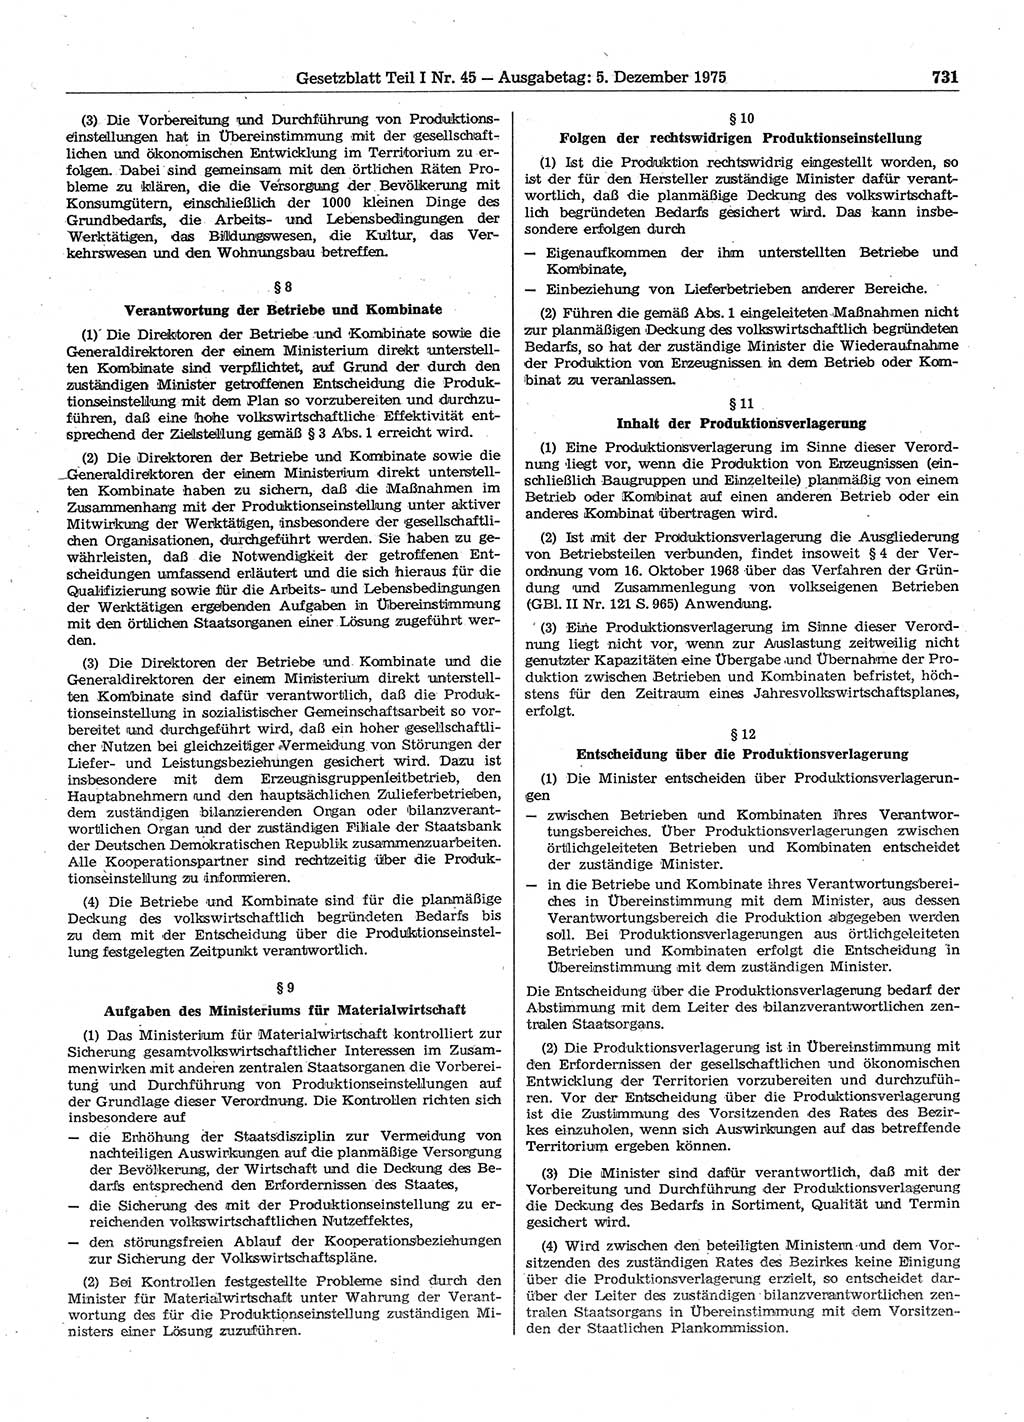 Gesetzblatt (GBl.) der Deutschen Demokratischen Republik (DDR) Teil Ⅰ 1975, Seite 731 (GBl. DDR Ⅰ 1975, S. 731)